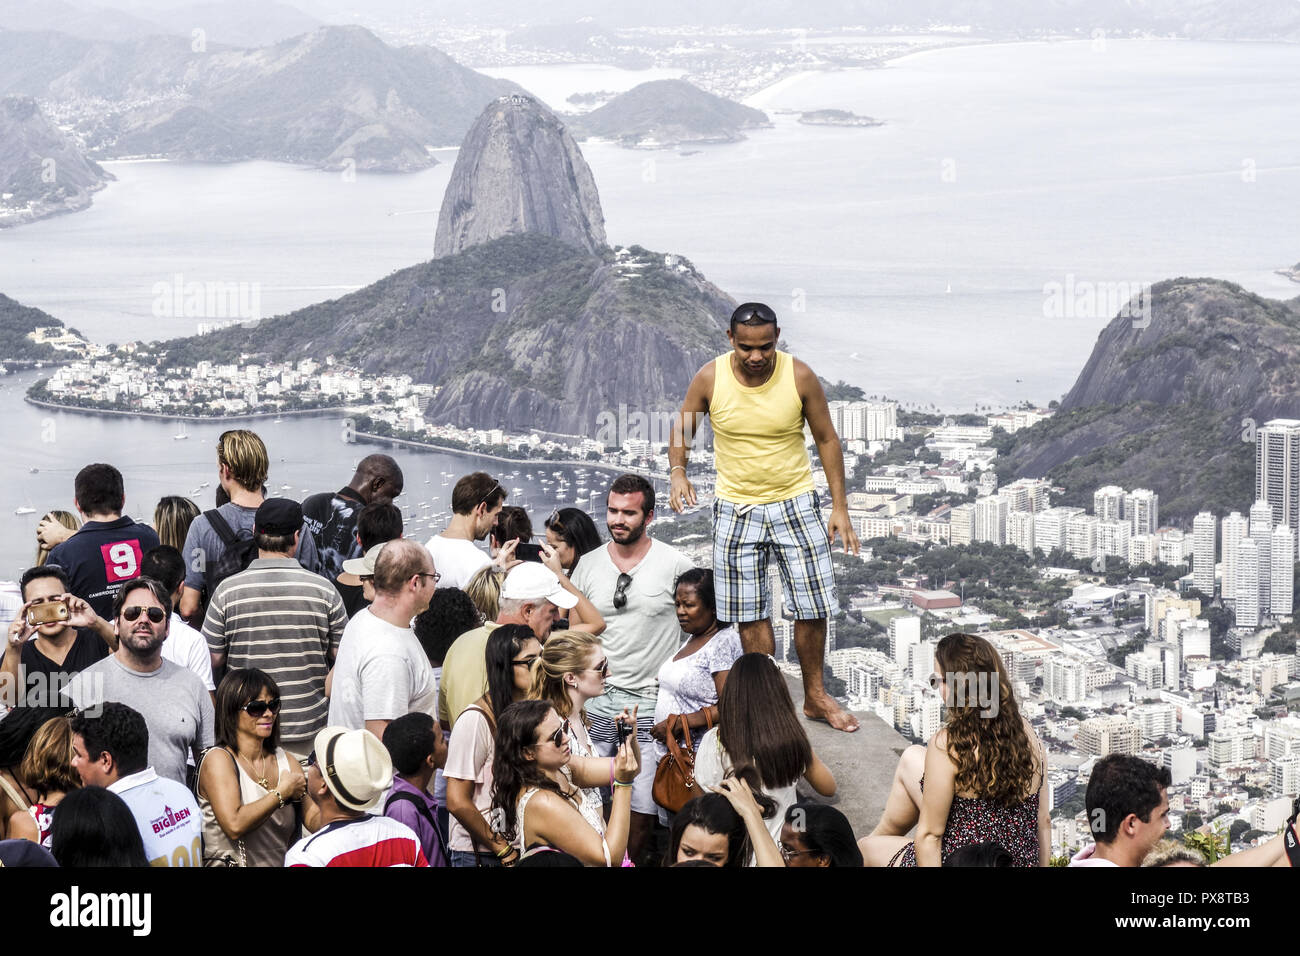 Rio de Janeiro, Corcovado, sugar loaf, Botafogo, Brazil Stock Photo